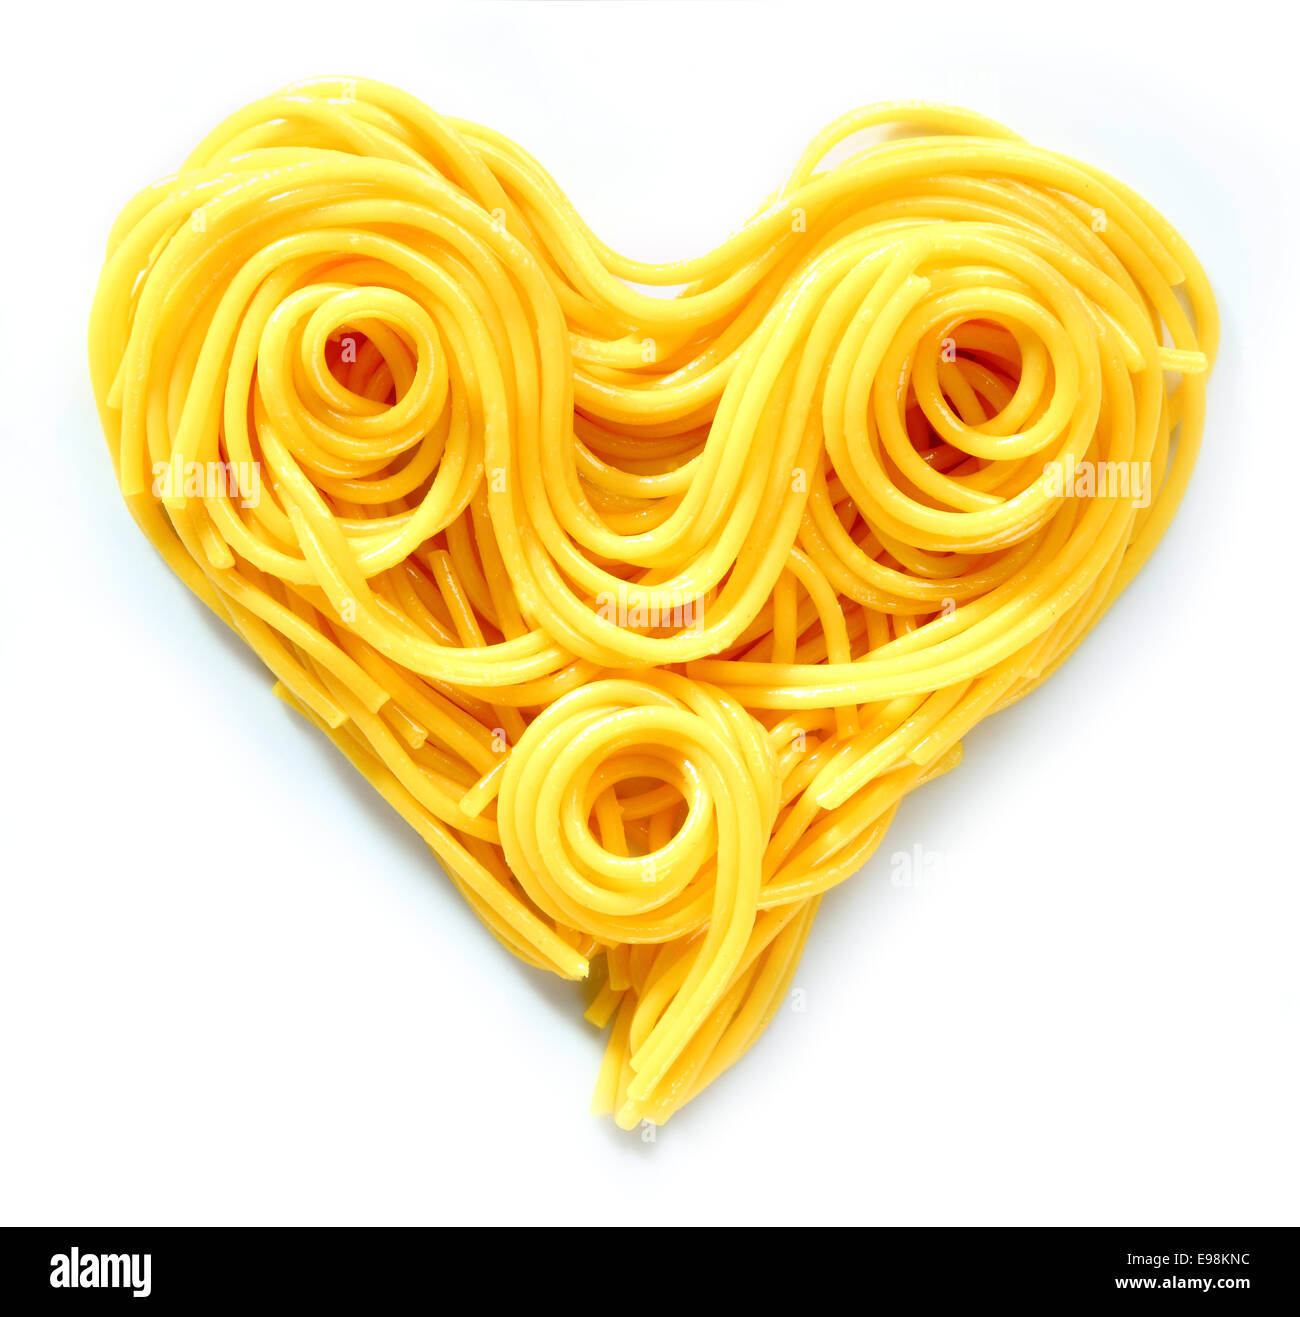 Italien De Pâtes En Forme De Coeur Photo stock - Image du